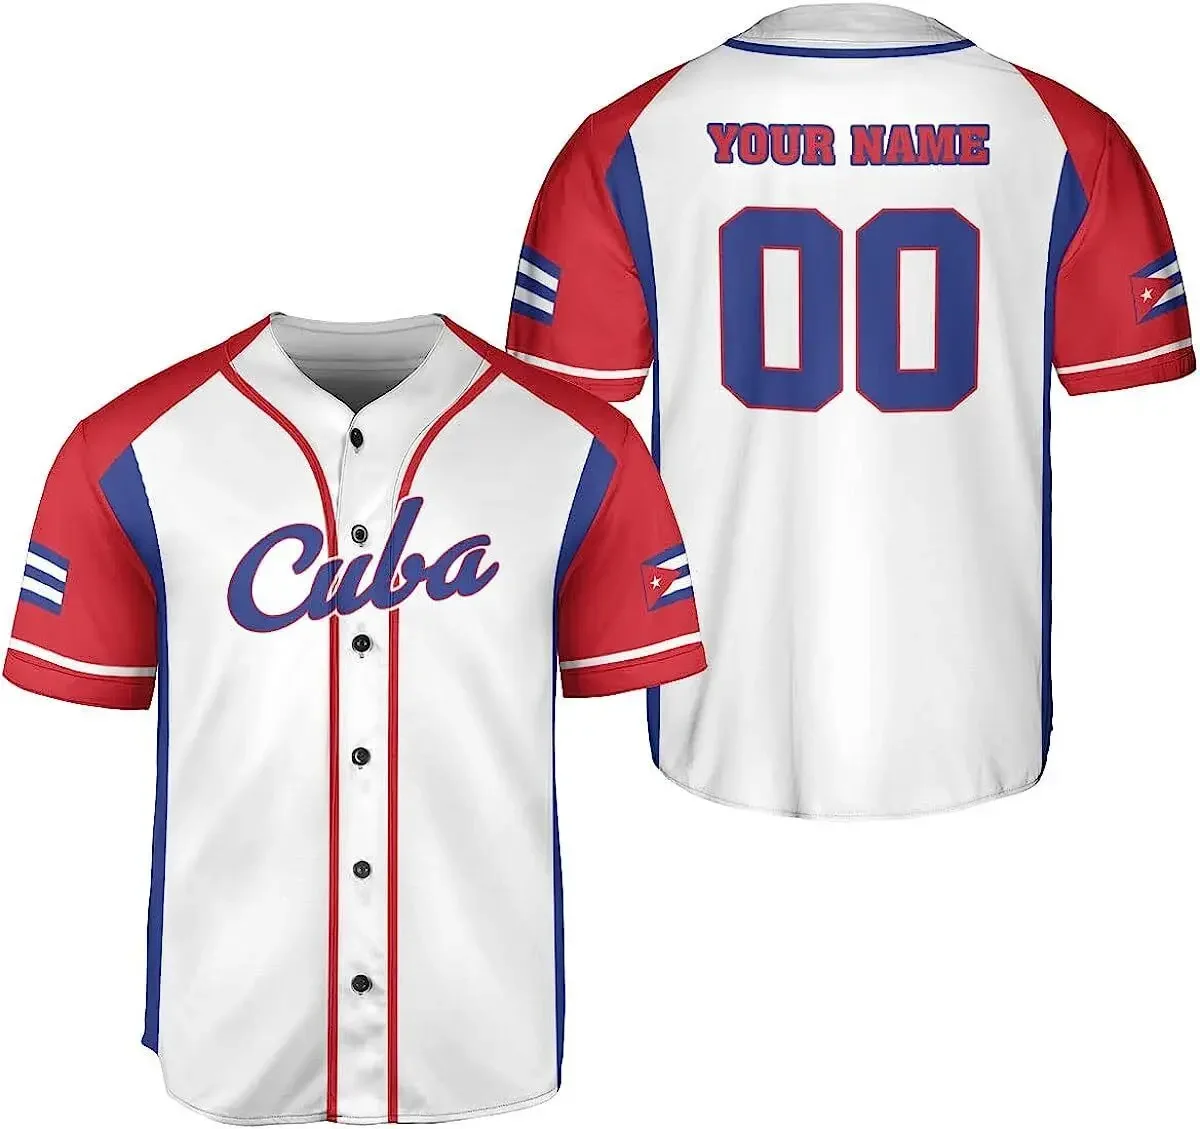 

Футболка мужская бейсбольная с 3D принтом, рубашка из волокна, с коротким рукавом, с кубинским оливковым армейским флагом, Спортивная уличная одежда